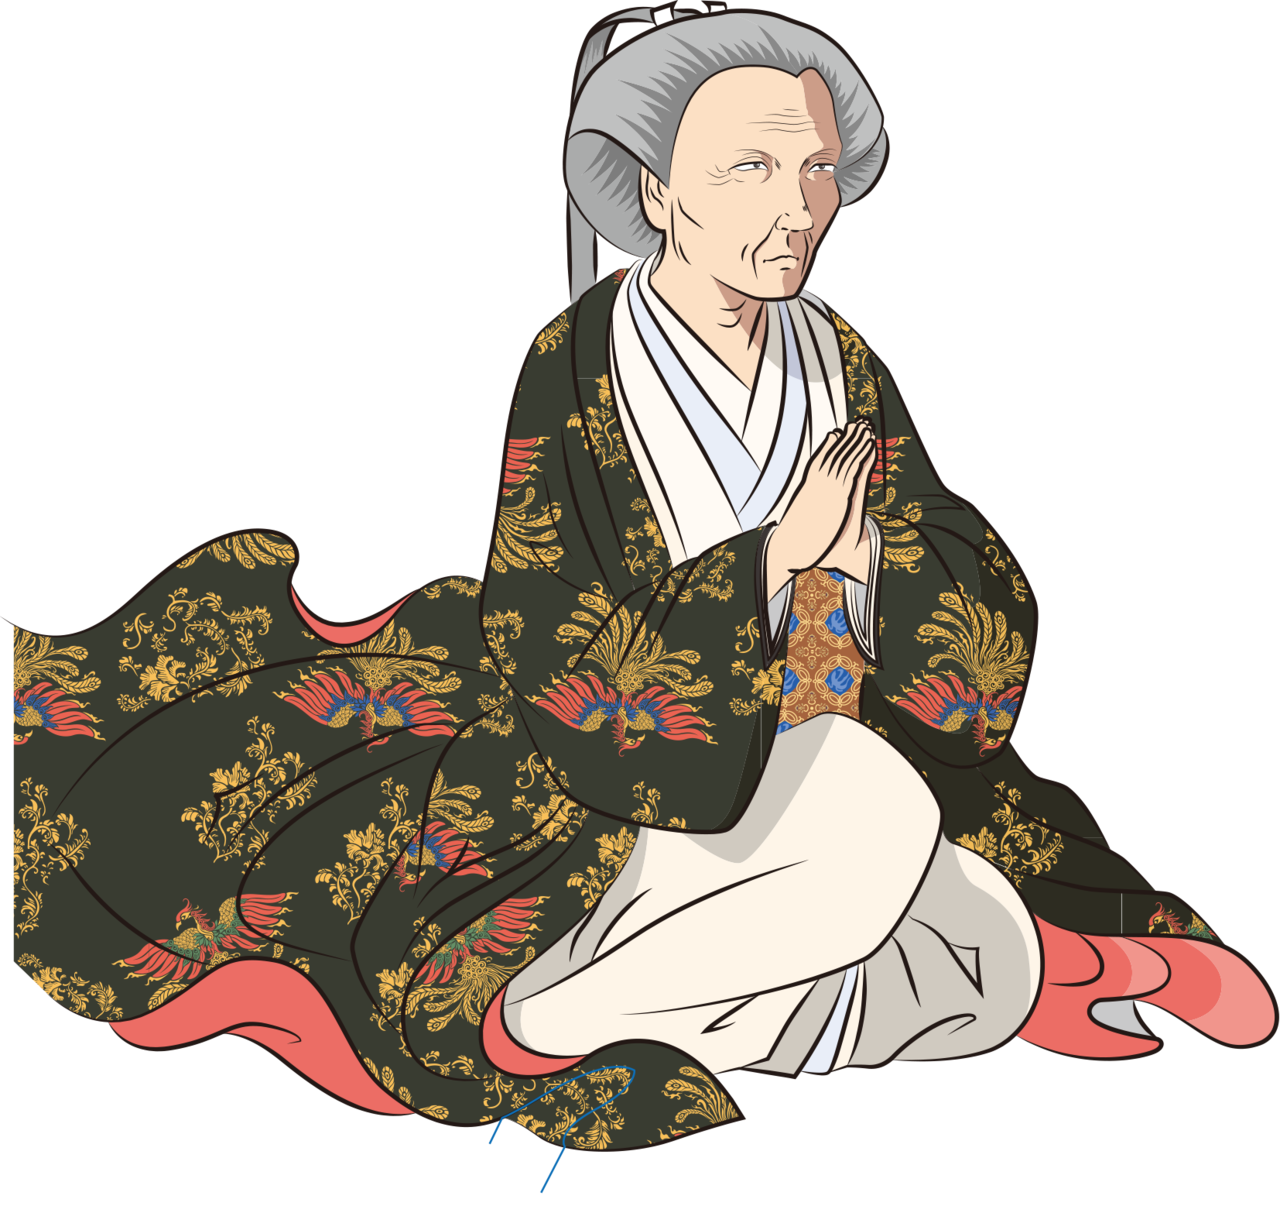 Мать Цунаёси, Кэйсёин, стала второй женщиной сёгунов Токугава, получившей первый придворный ранг. Младшая степень первого придворного ранга – самый высокий ранг для женщин, она поднялась на вершину процветания (иллюстрация Сато Тадаси)